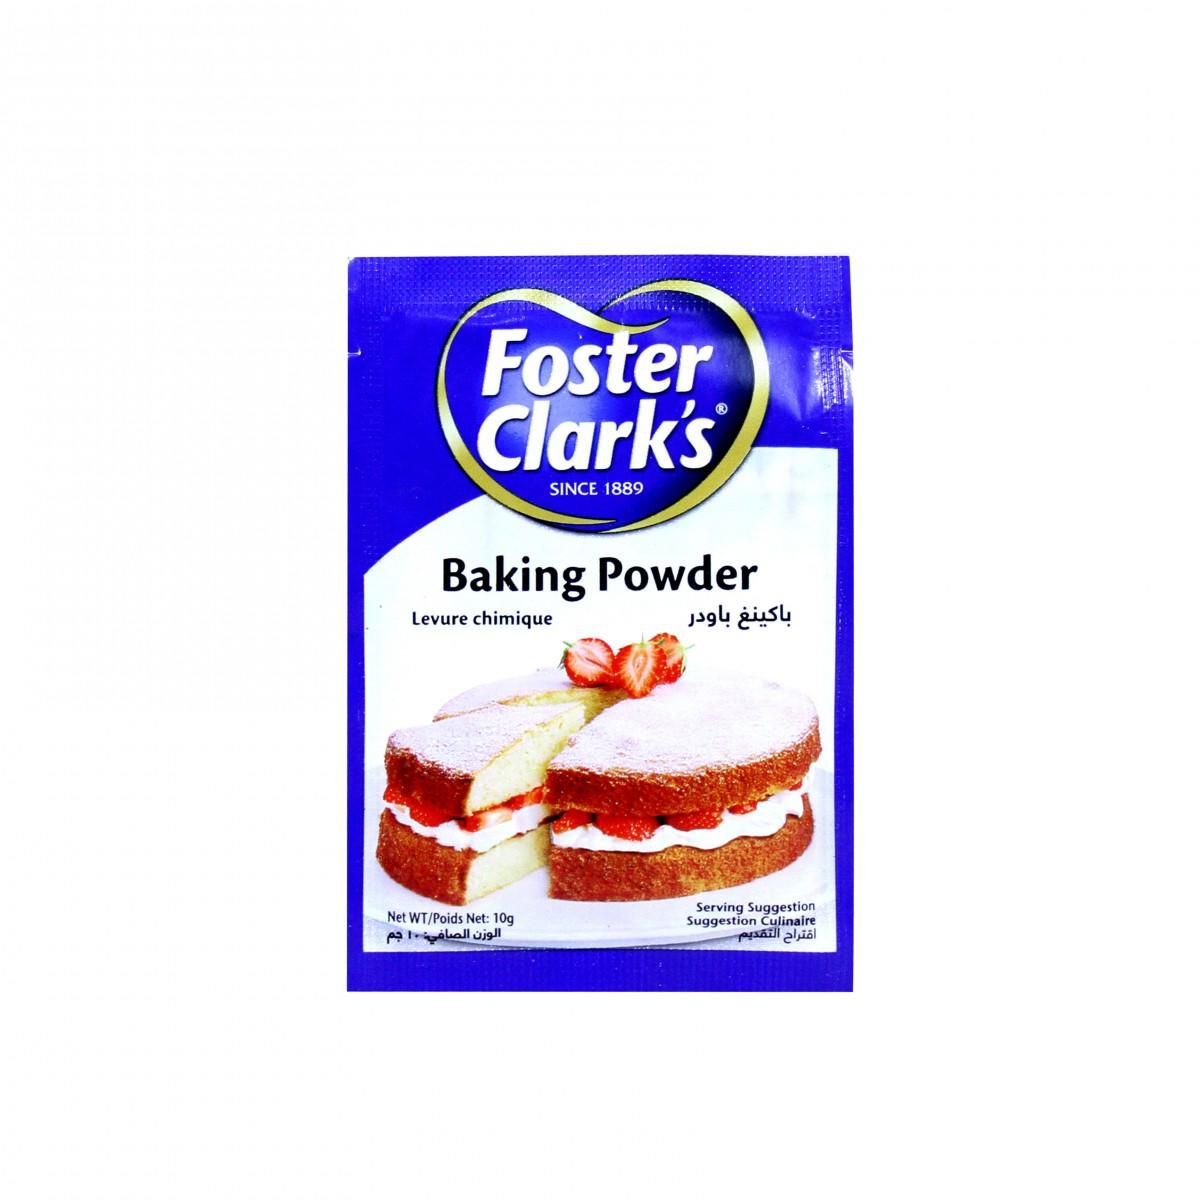 Foster Clark's Baking Powder 10g